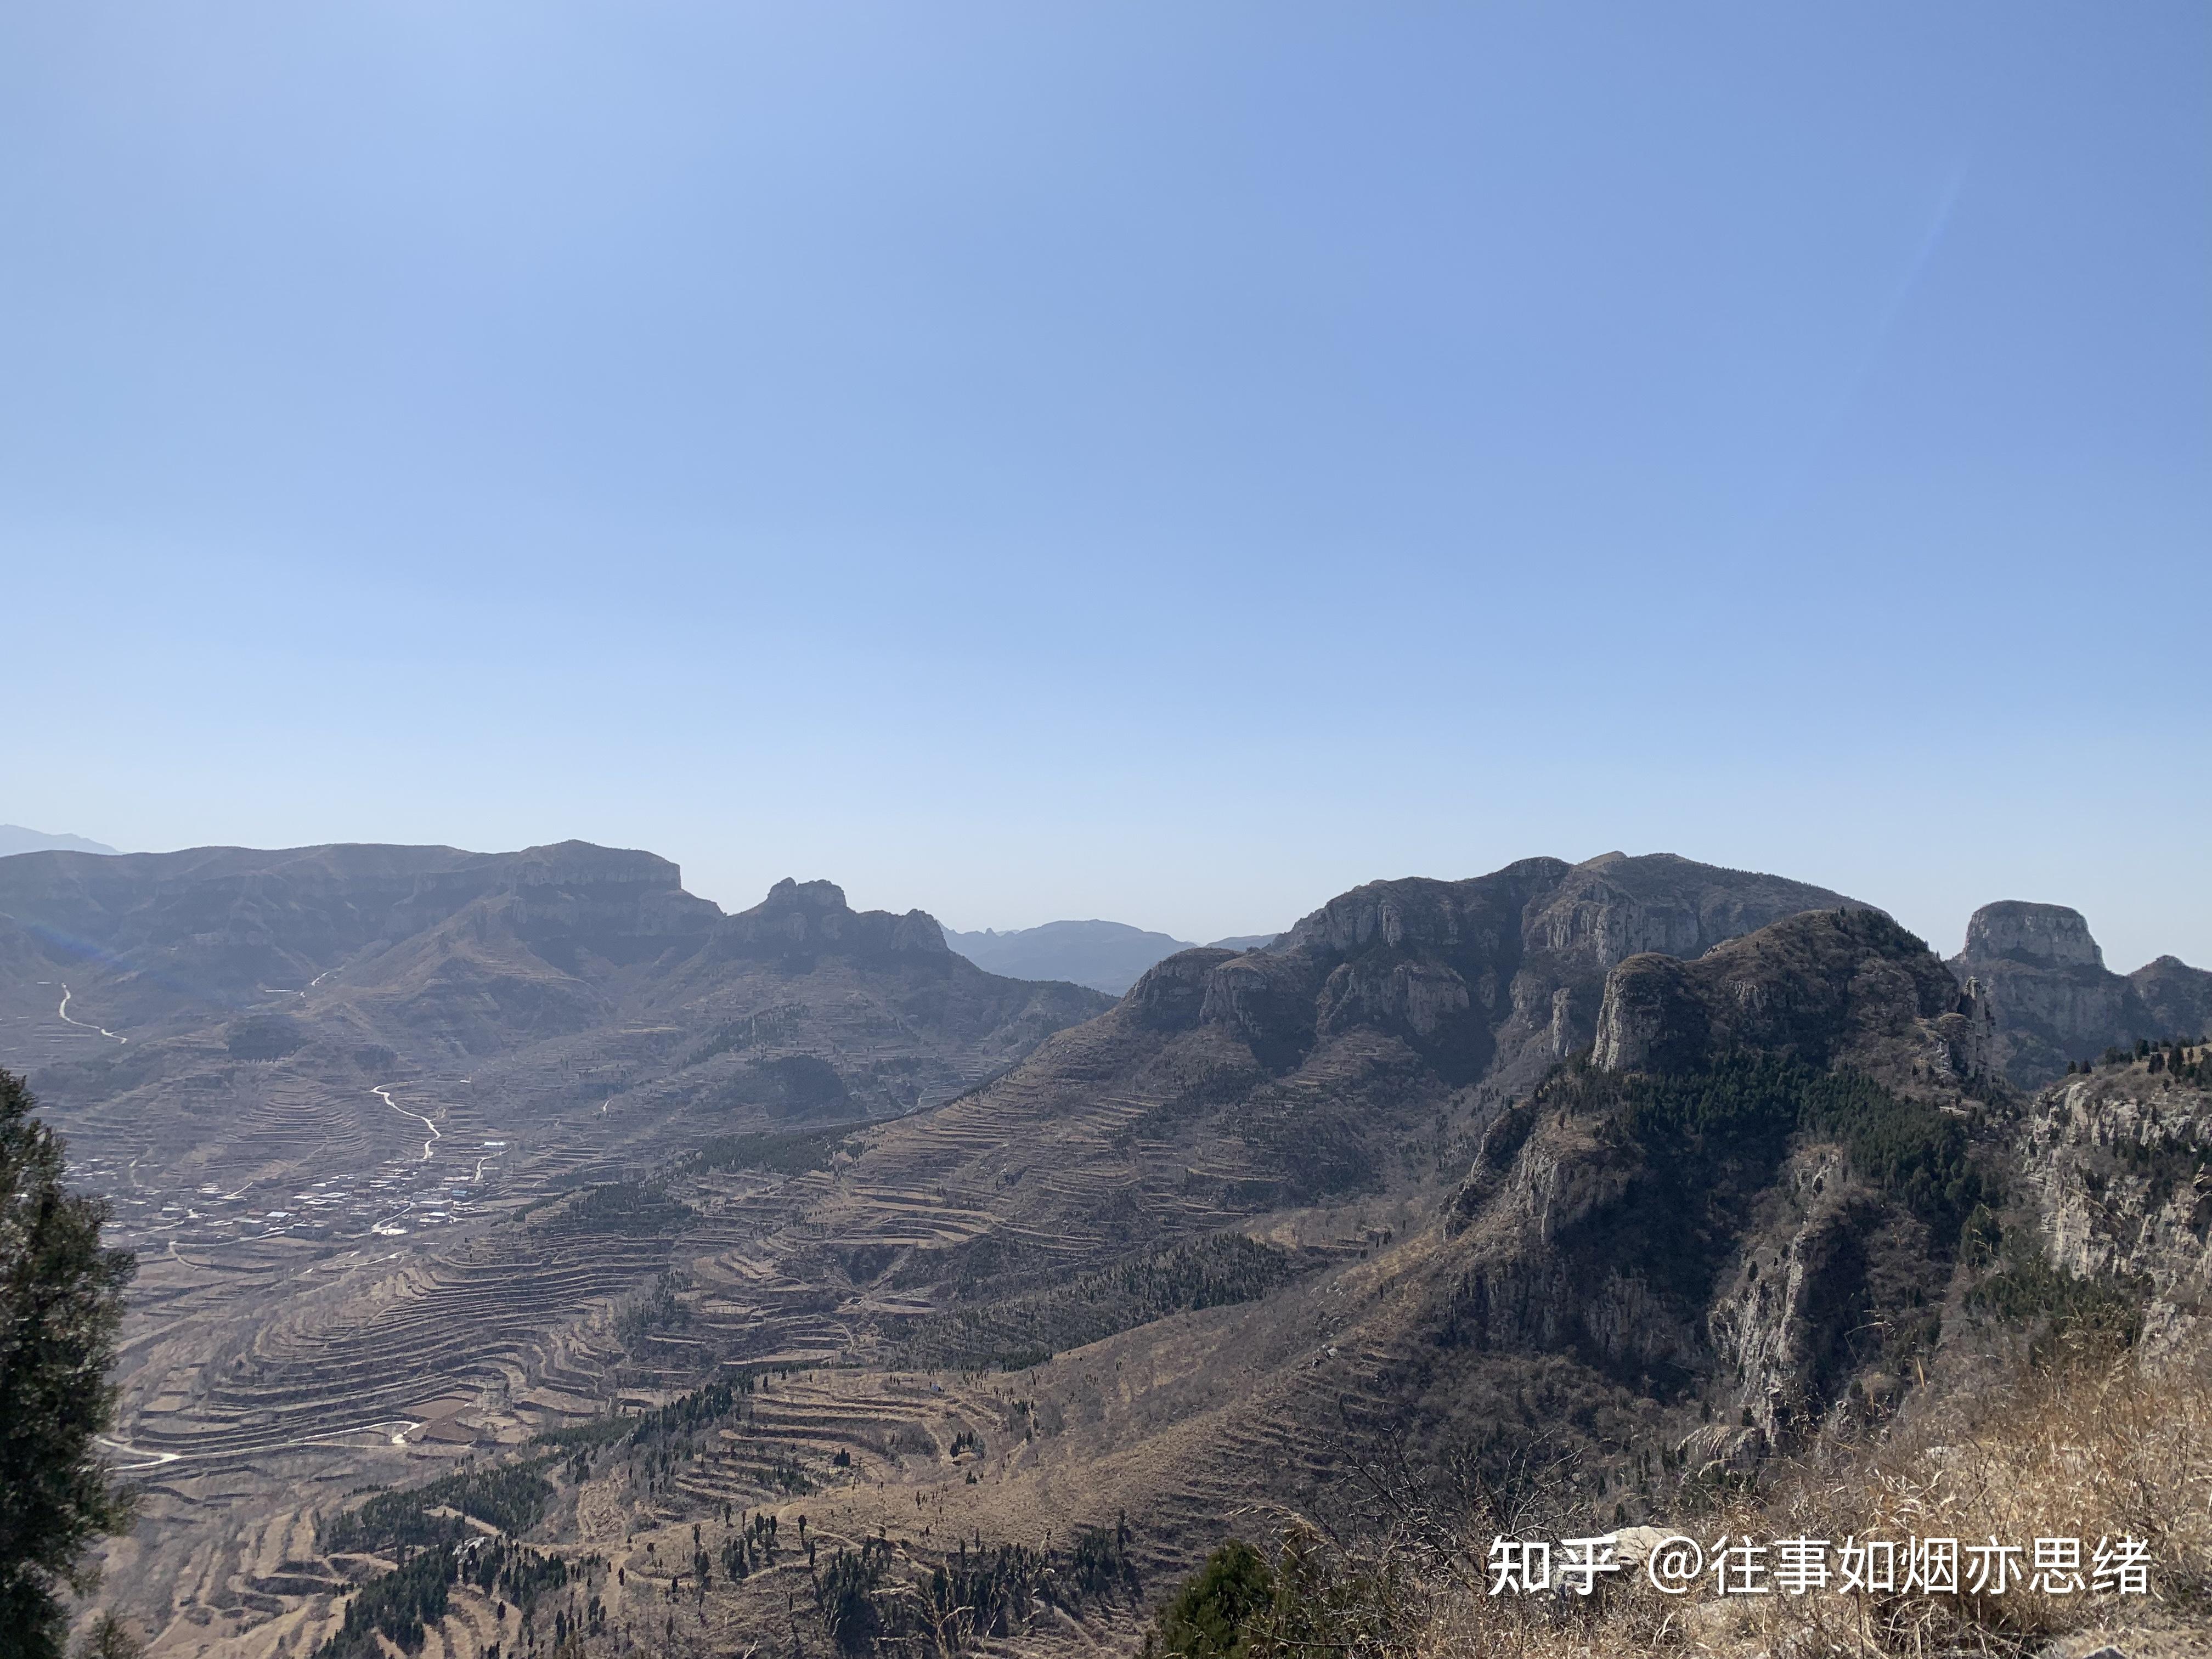 河津市梯子崖生态旅游开发有限公司-登千年古道梯子崖